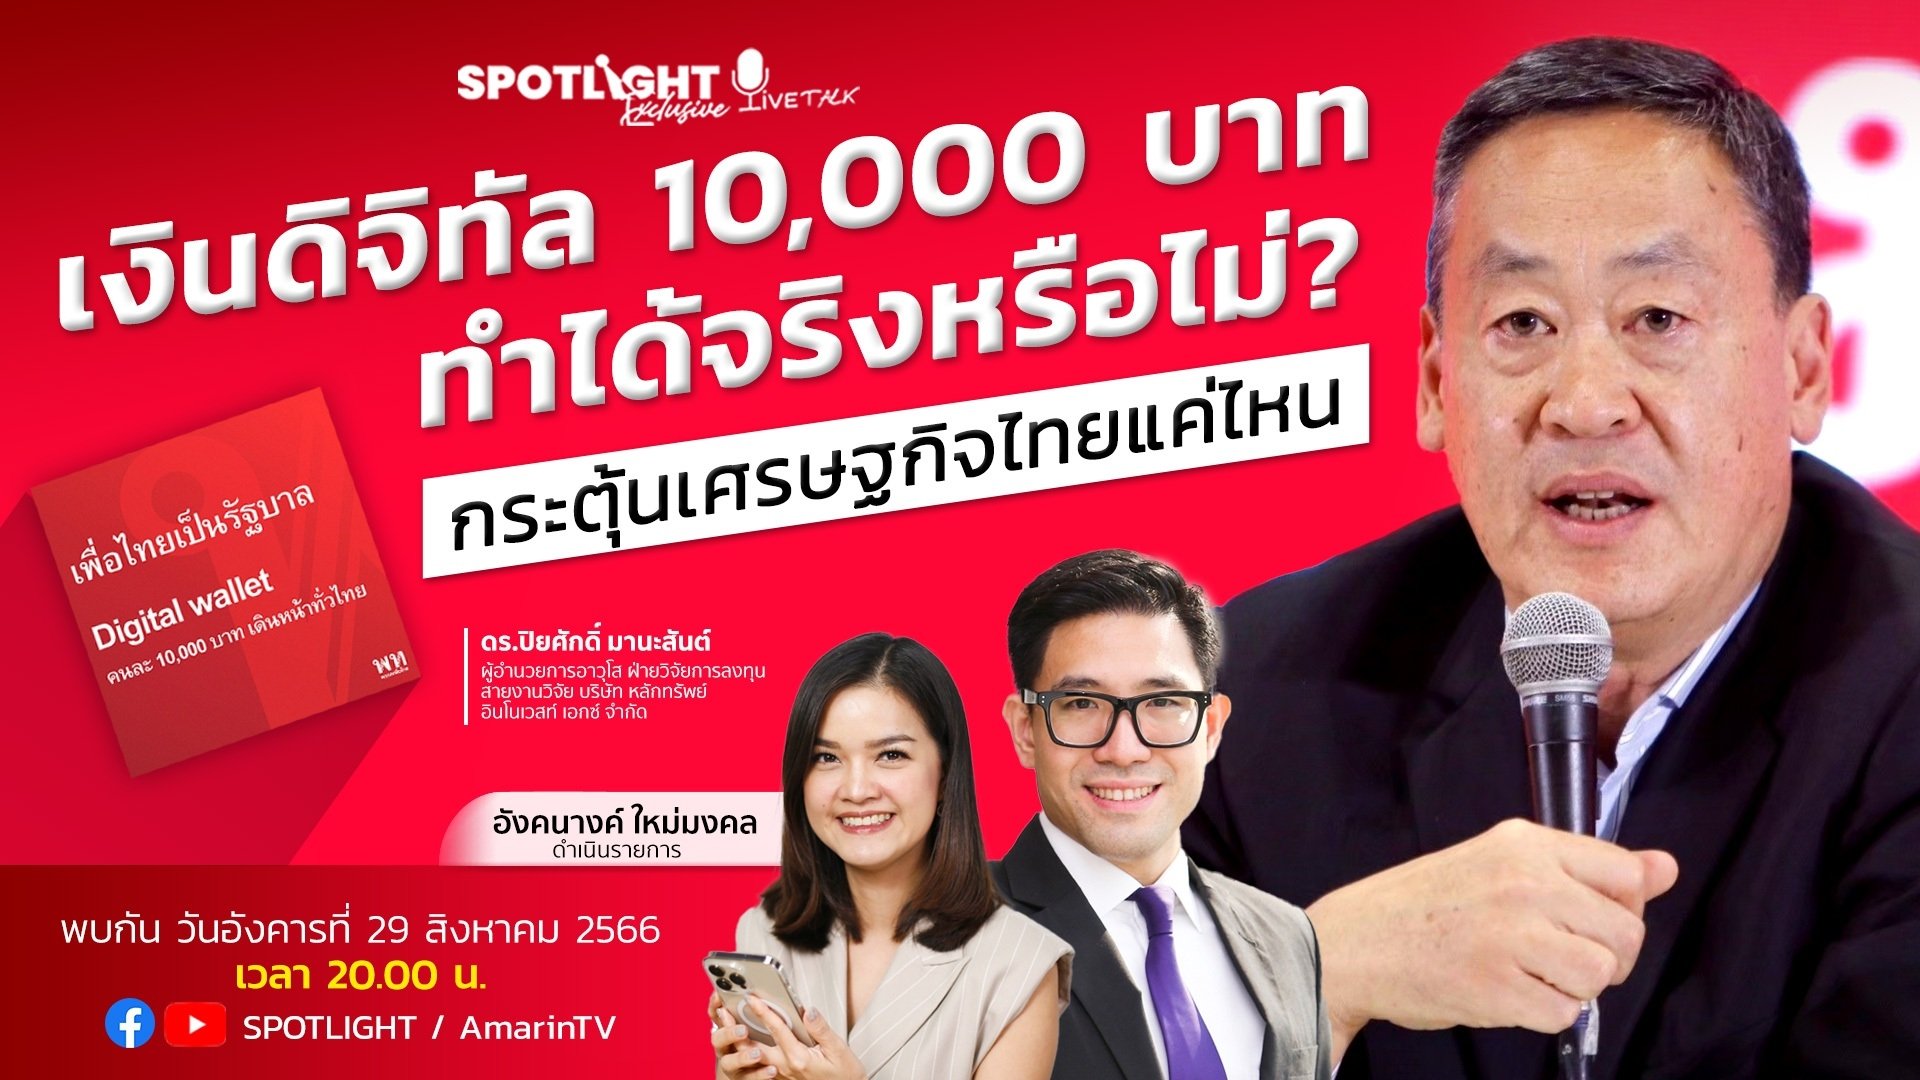  เงินดิจิทัล 10,000 บาท ทำได้จริงหรือไม่? กระตุ้นเศรษฐกิจไทยแค่ไหน | Spotlight | 29 ส.ค. 66 | AMARIN TVHD34